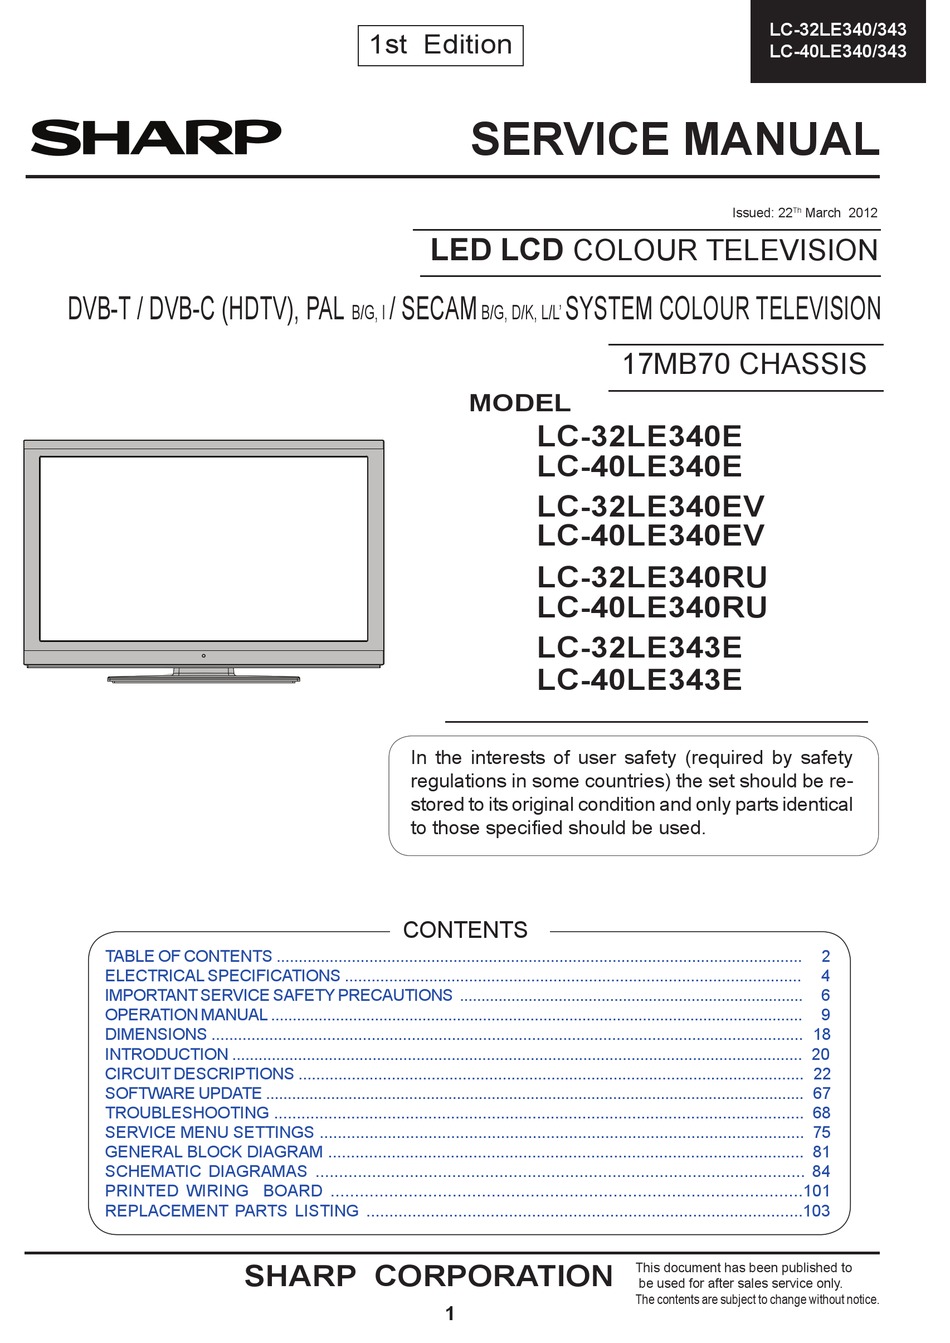 SHARP LC-32LE340E SERVICE MANUAL Pdf Download | ManualsLib